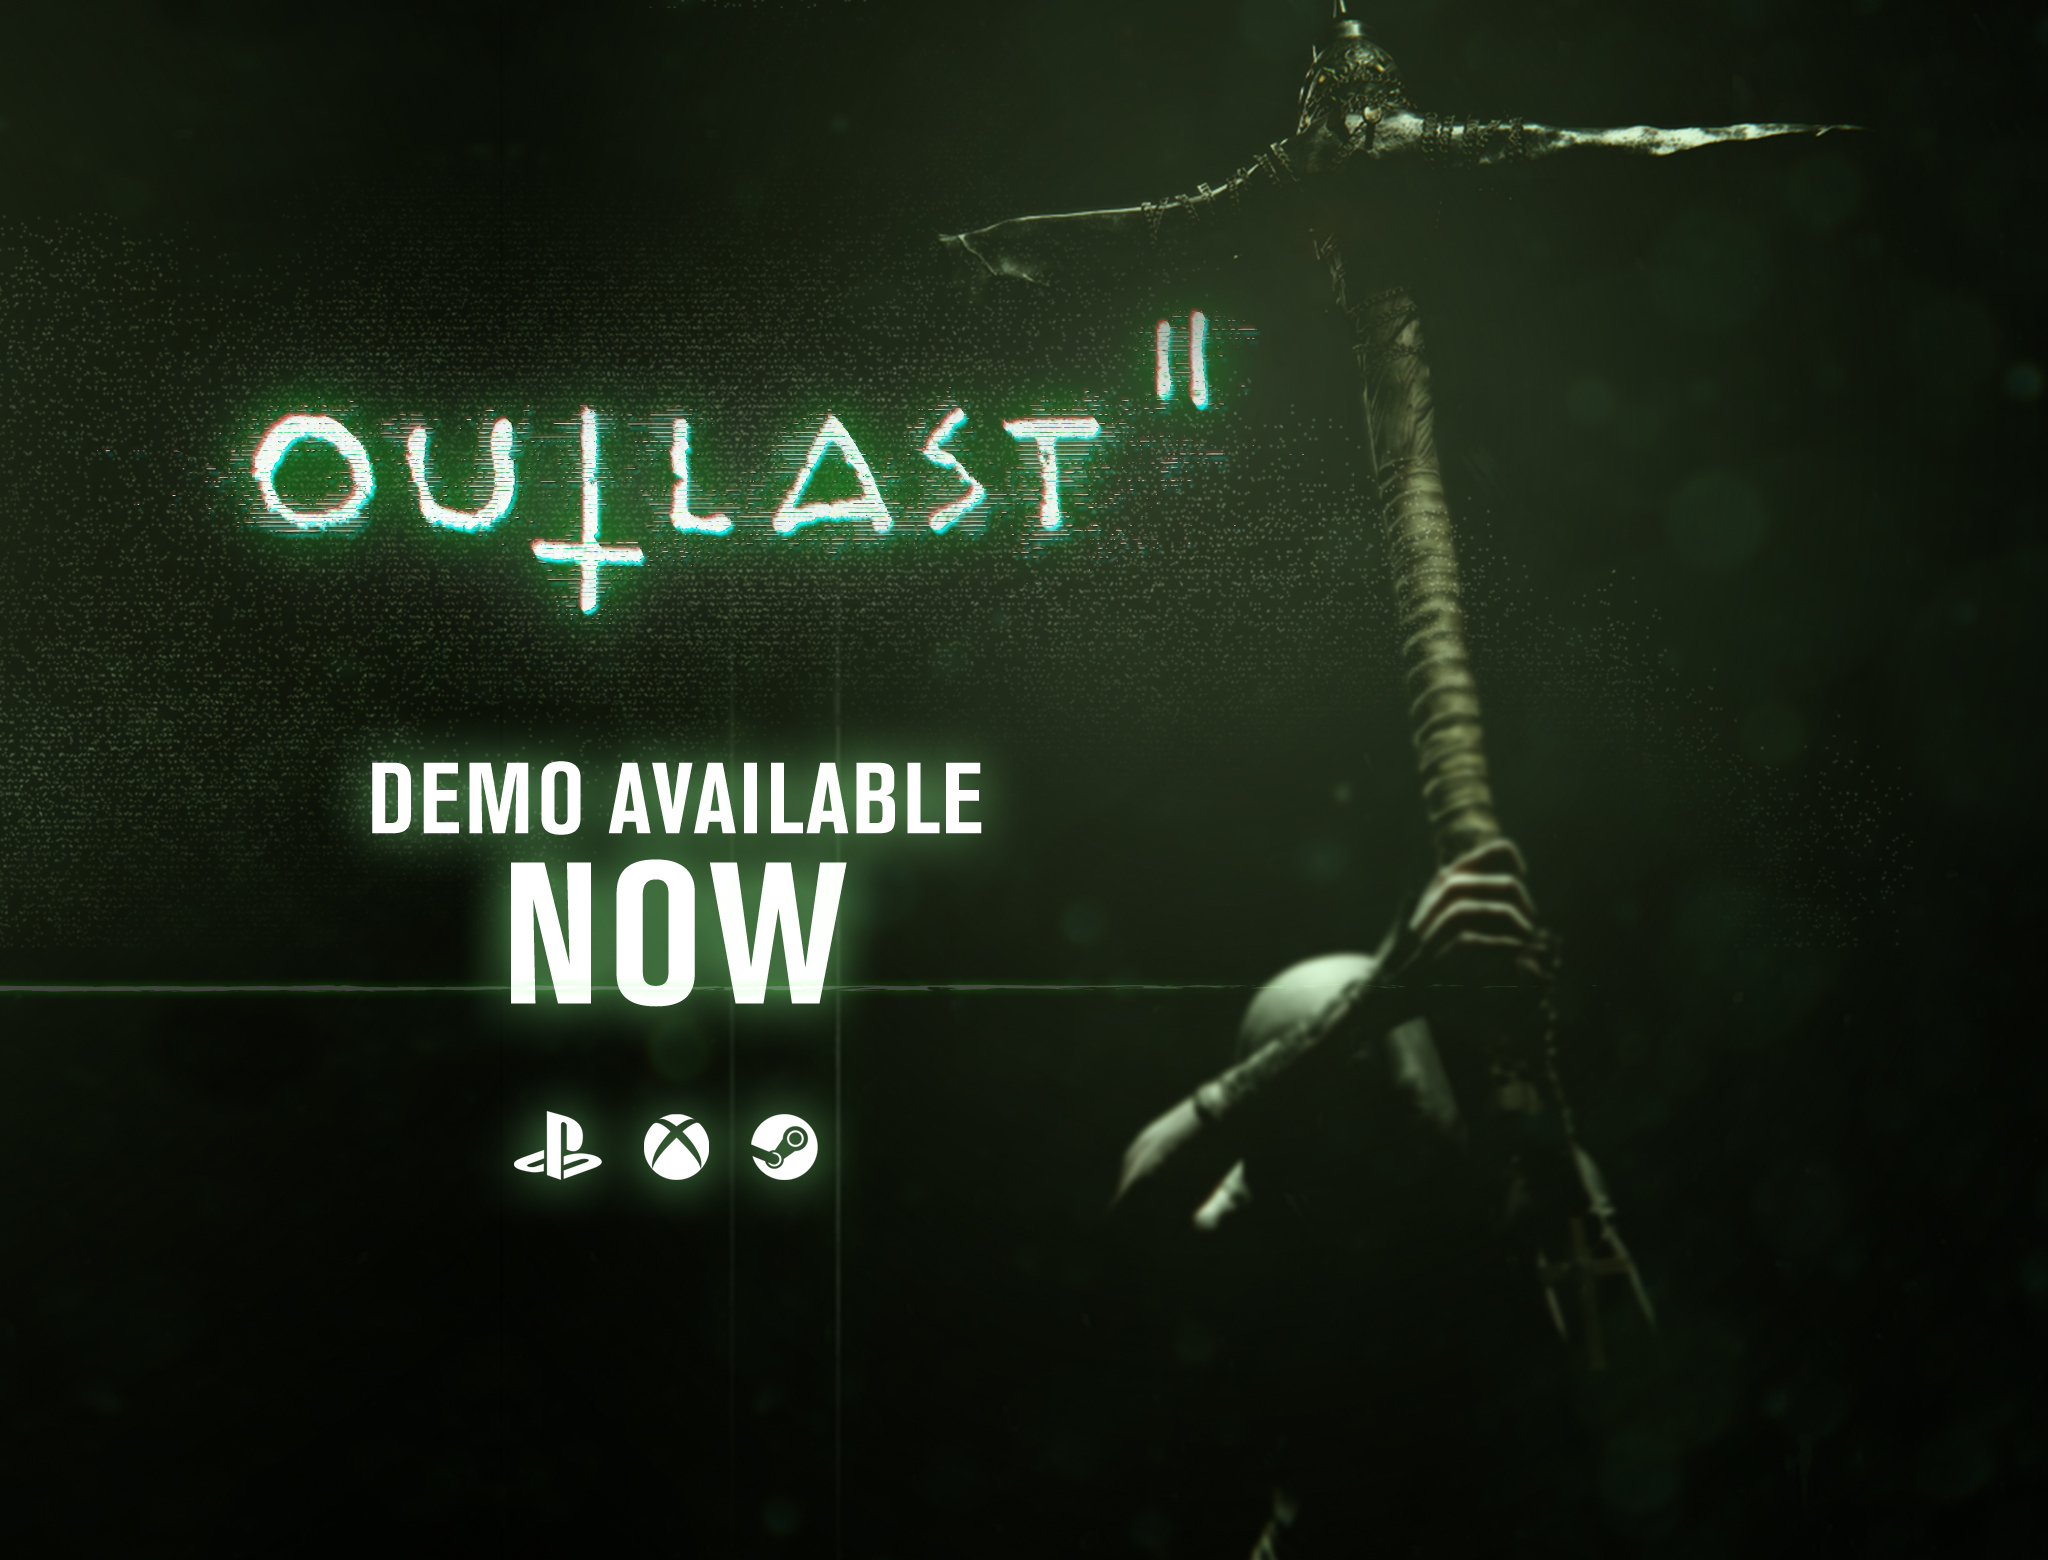 outlast 2 demo ending